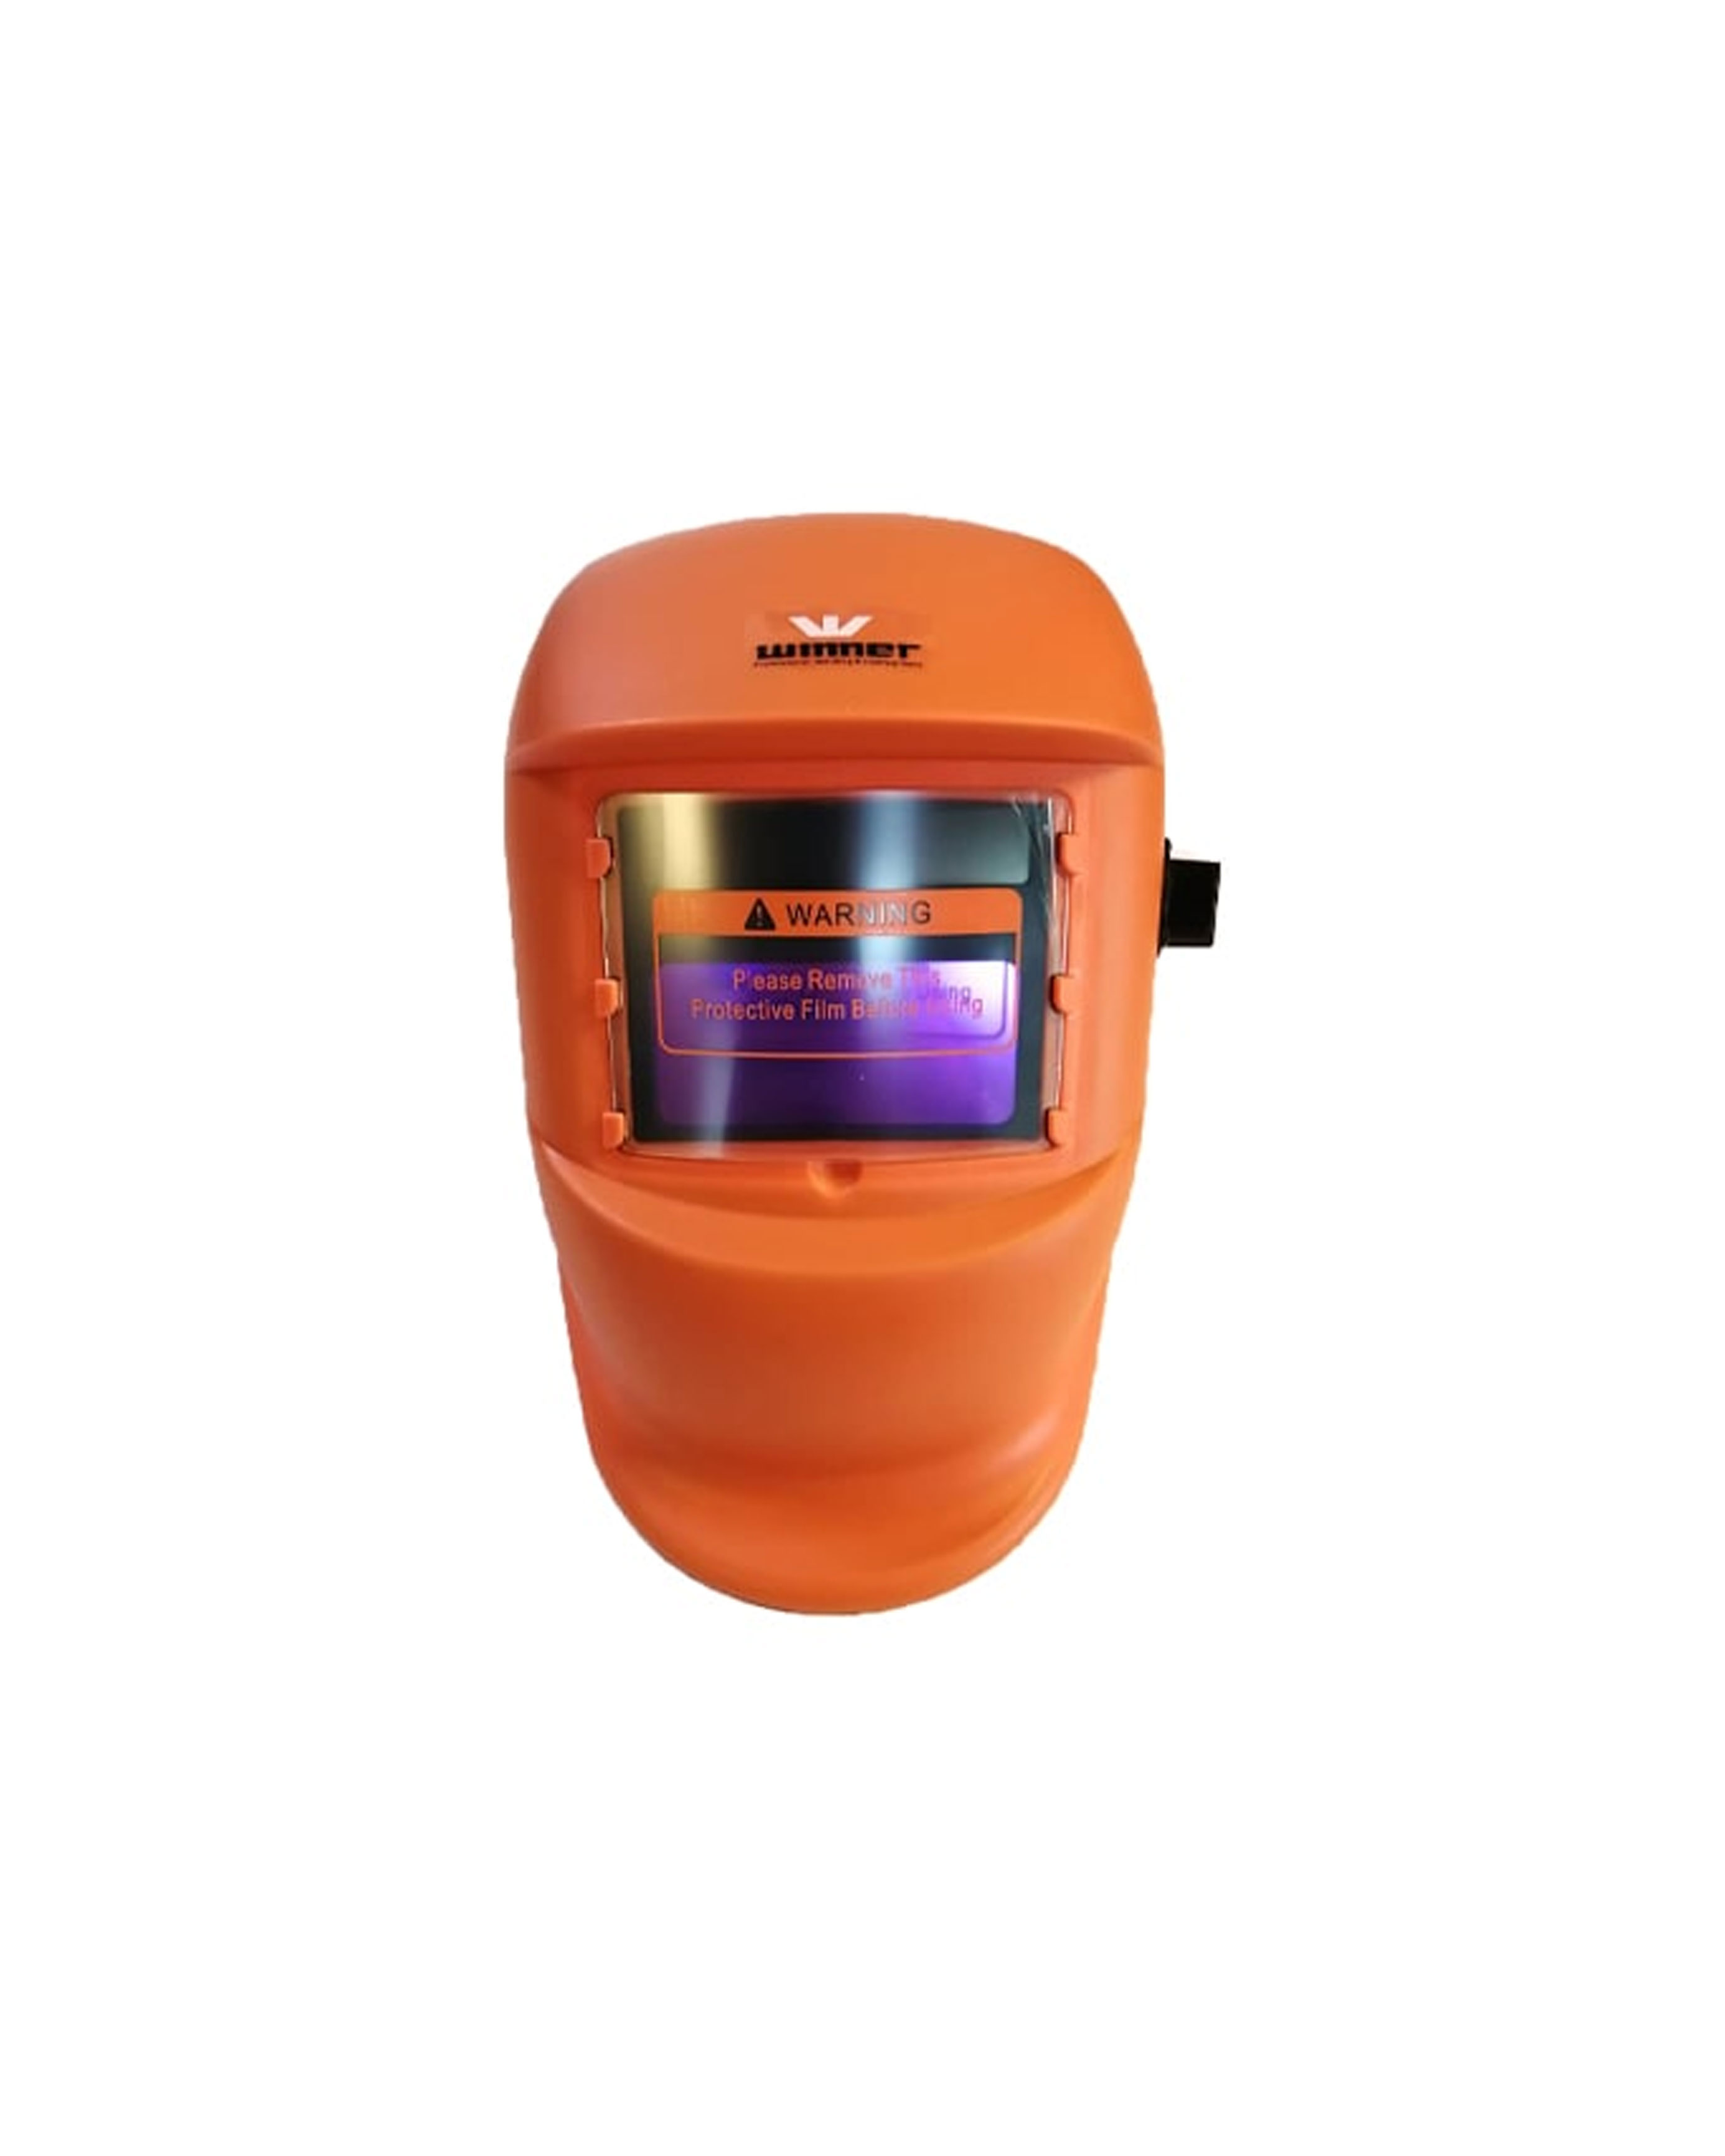 ماسک جوشکاری اتوماتیک وینر نارنجی مدل W-022N